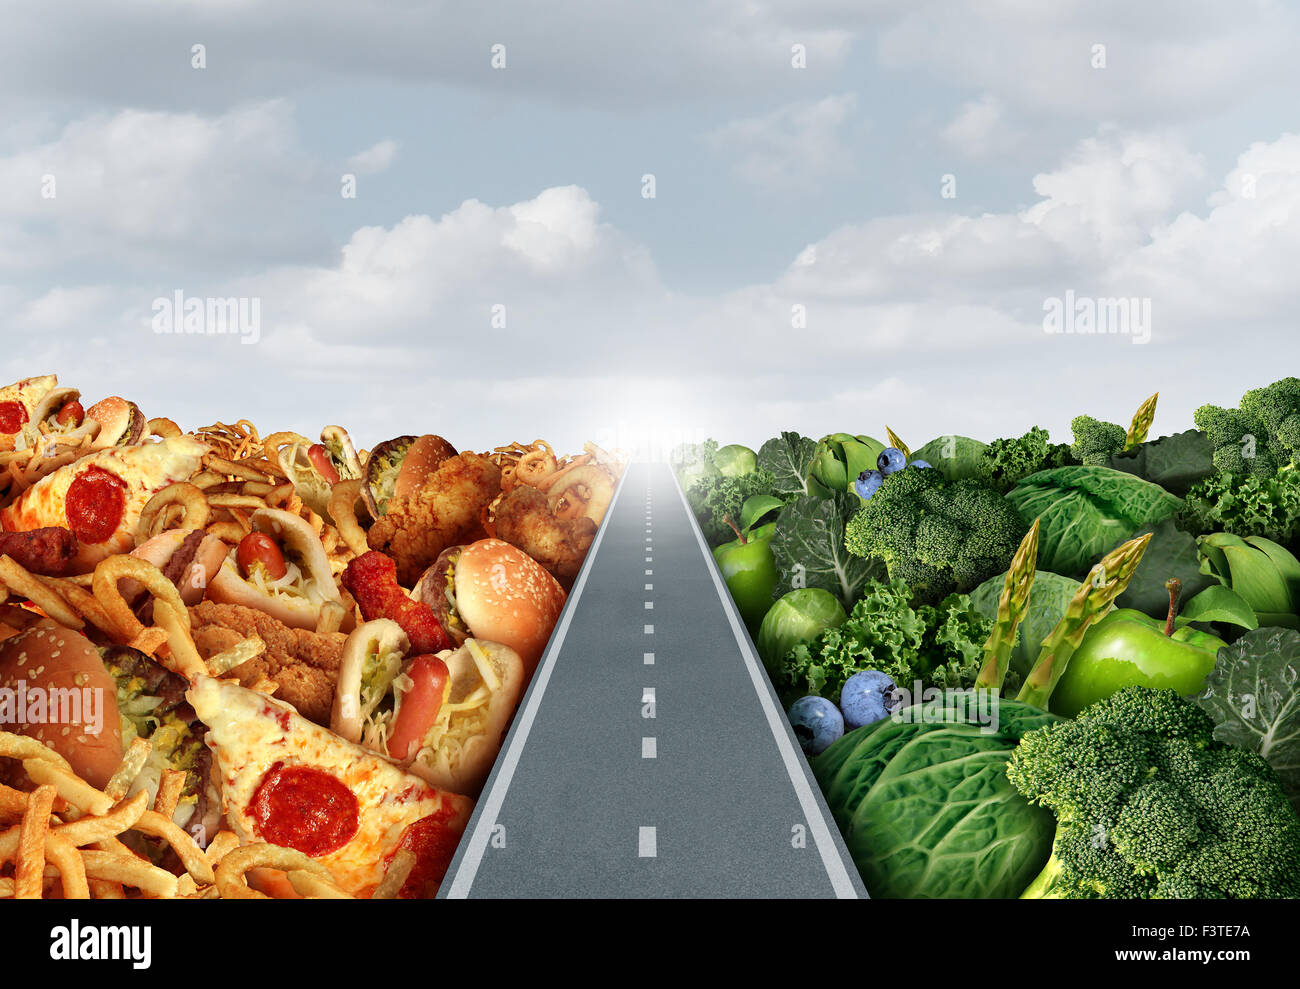 Diät Lifestyle Konzept oder Ernährung Entscheidung Symbol und Essen Entscheidungen Dilemma zwischen gesunden gutes frisches Obst und Gemüse oder Stockfoto